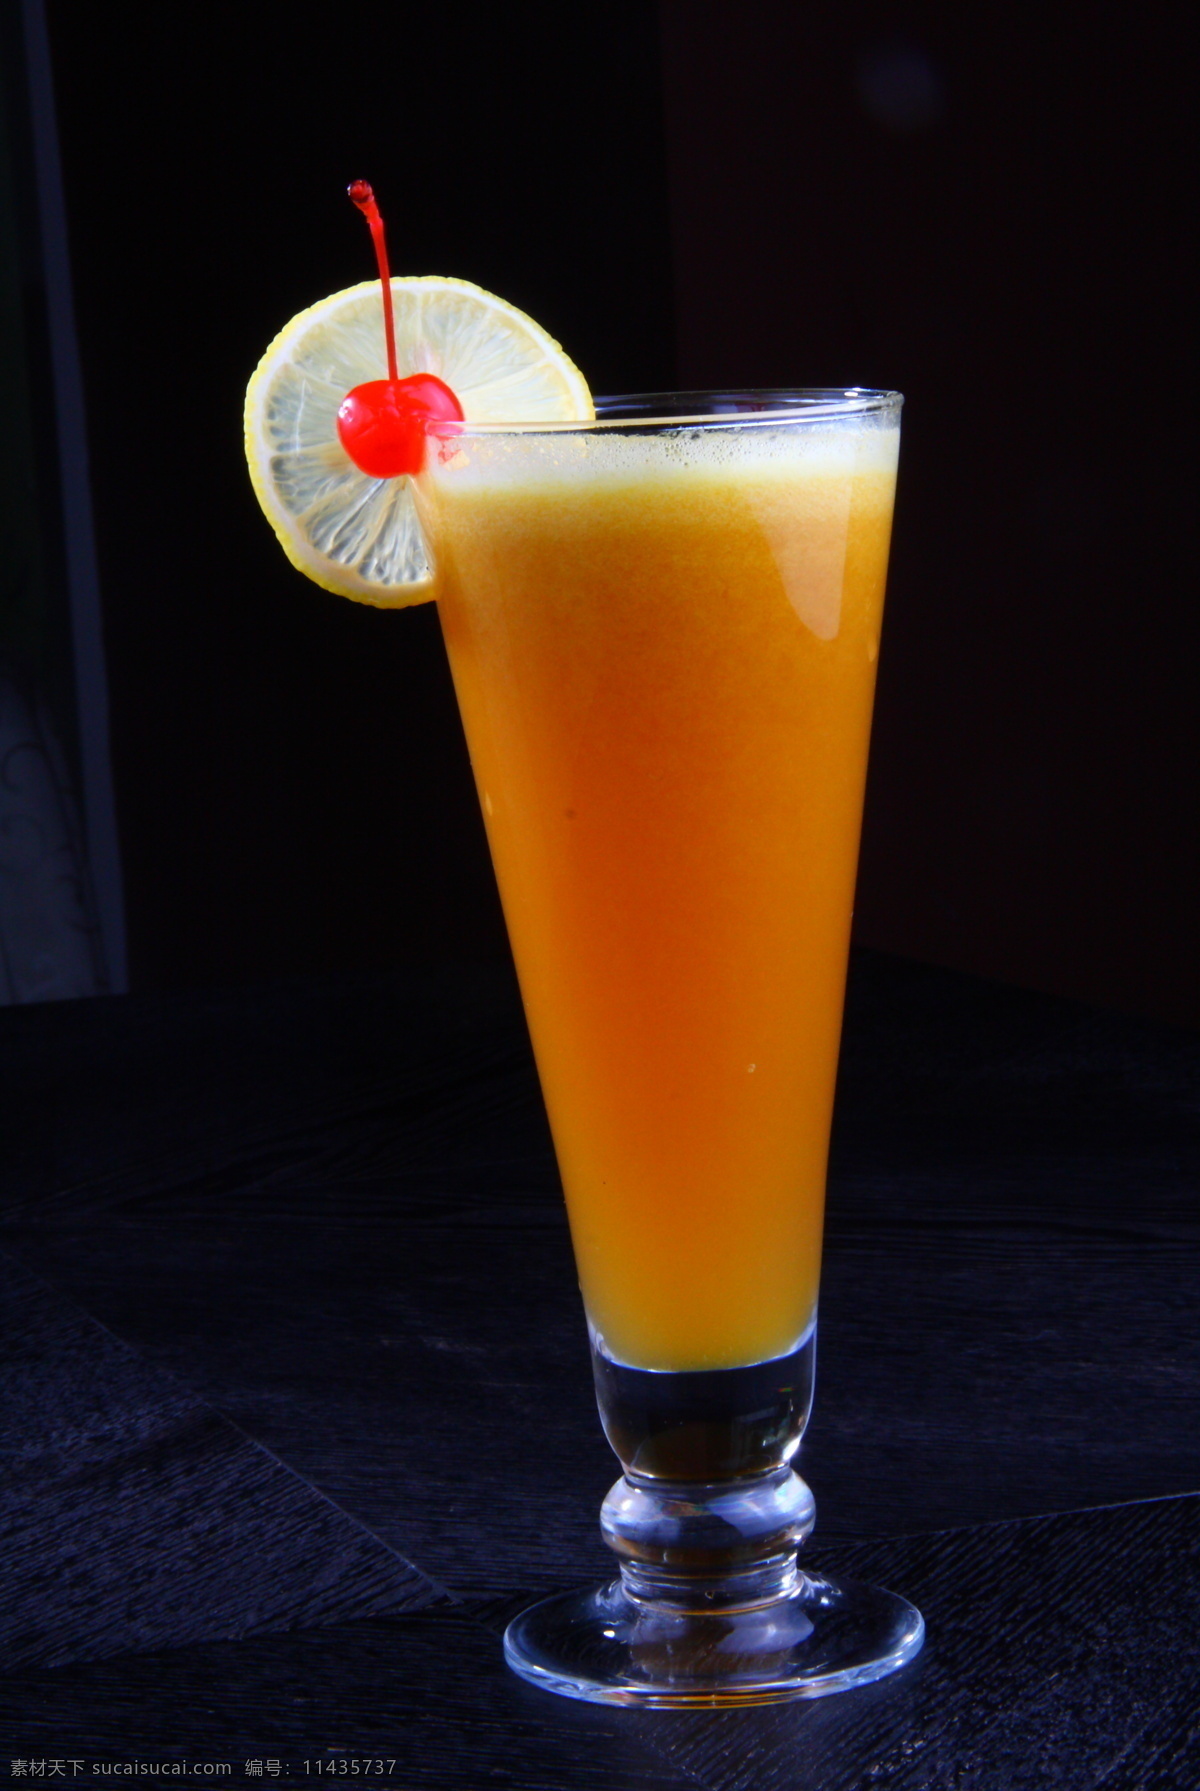 饮料 餐饮美食 橙汁 果汁 酒水 柠檬 水果 饮料酒水 现榨果汁 psd源文件 餐饮素材